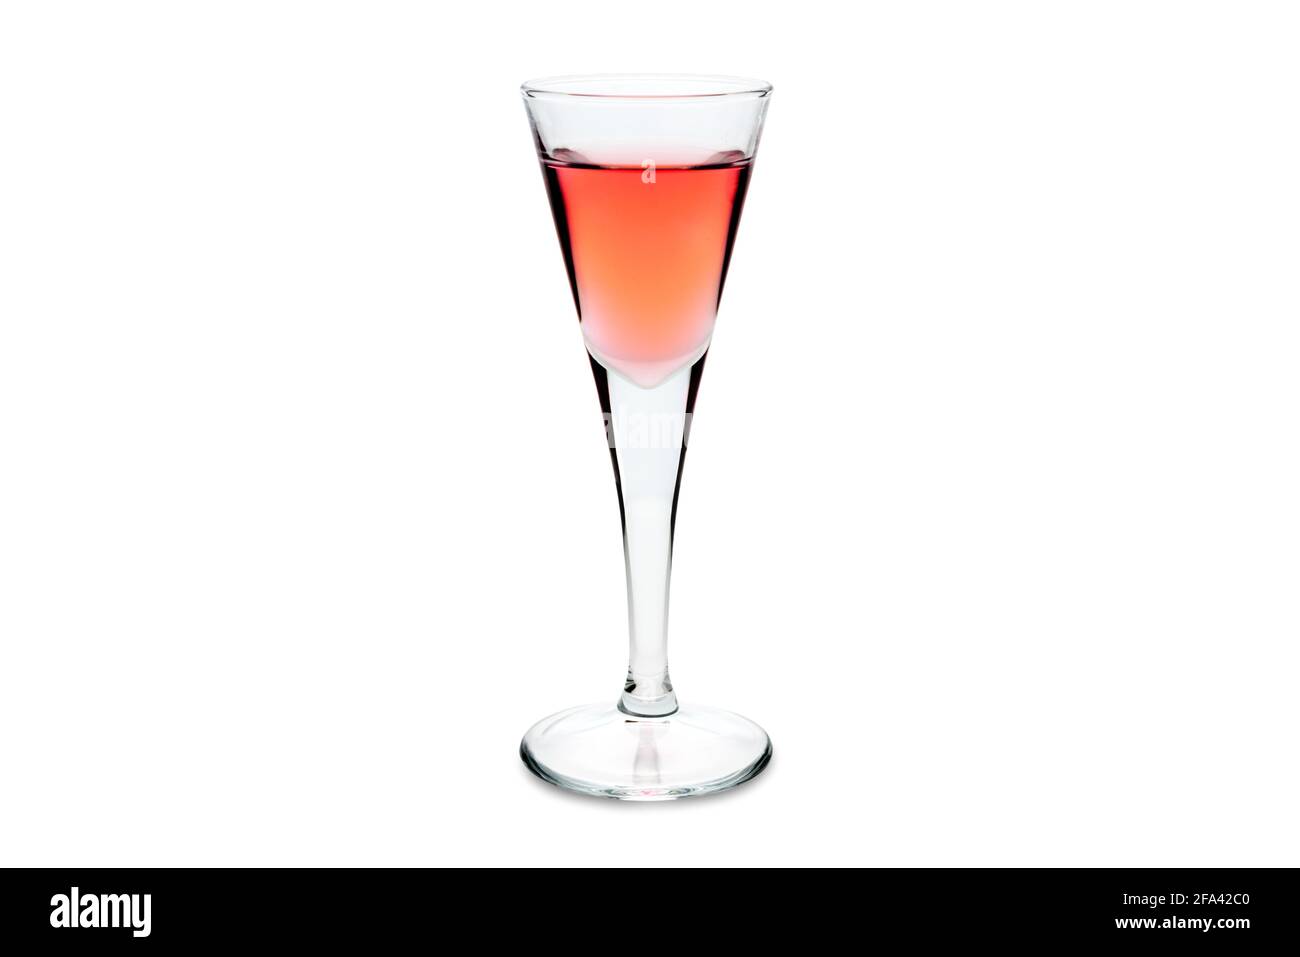 Rosolio, liqueur italienne typique distillée à partir de roses dans un verre à liqueur isolé sur blanc. Copier l'espace Banque D'Images